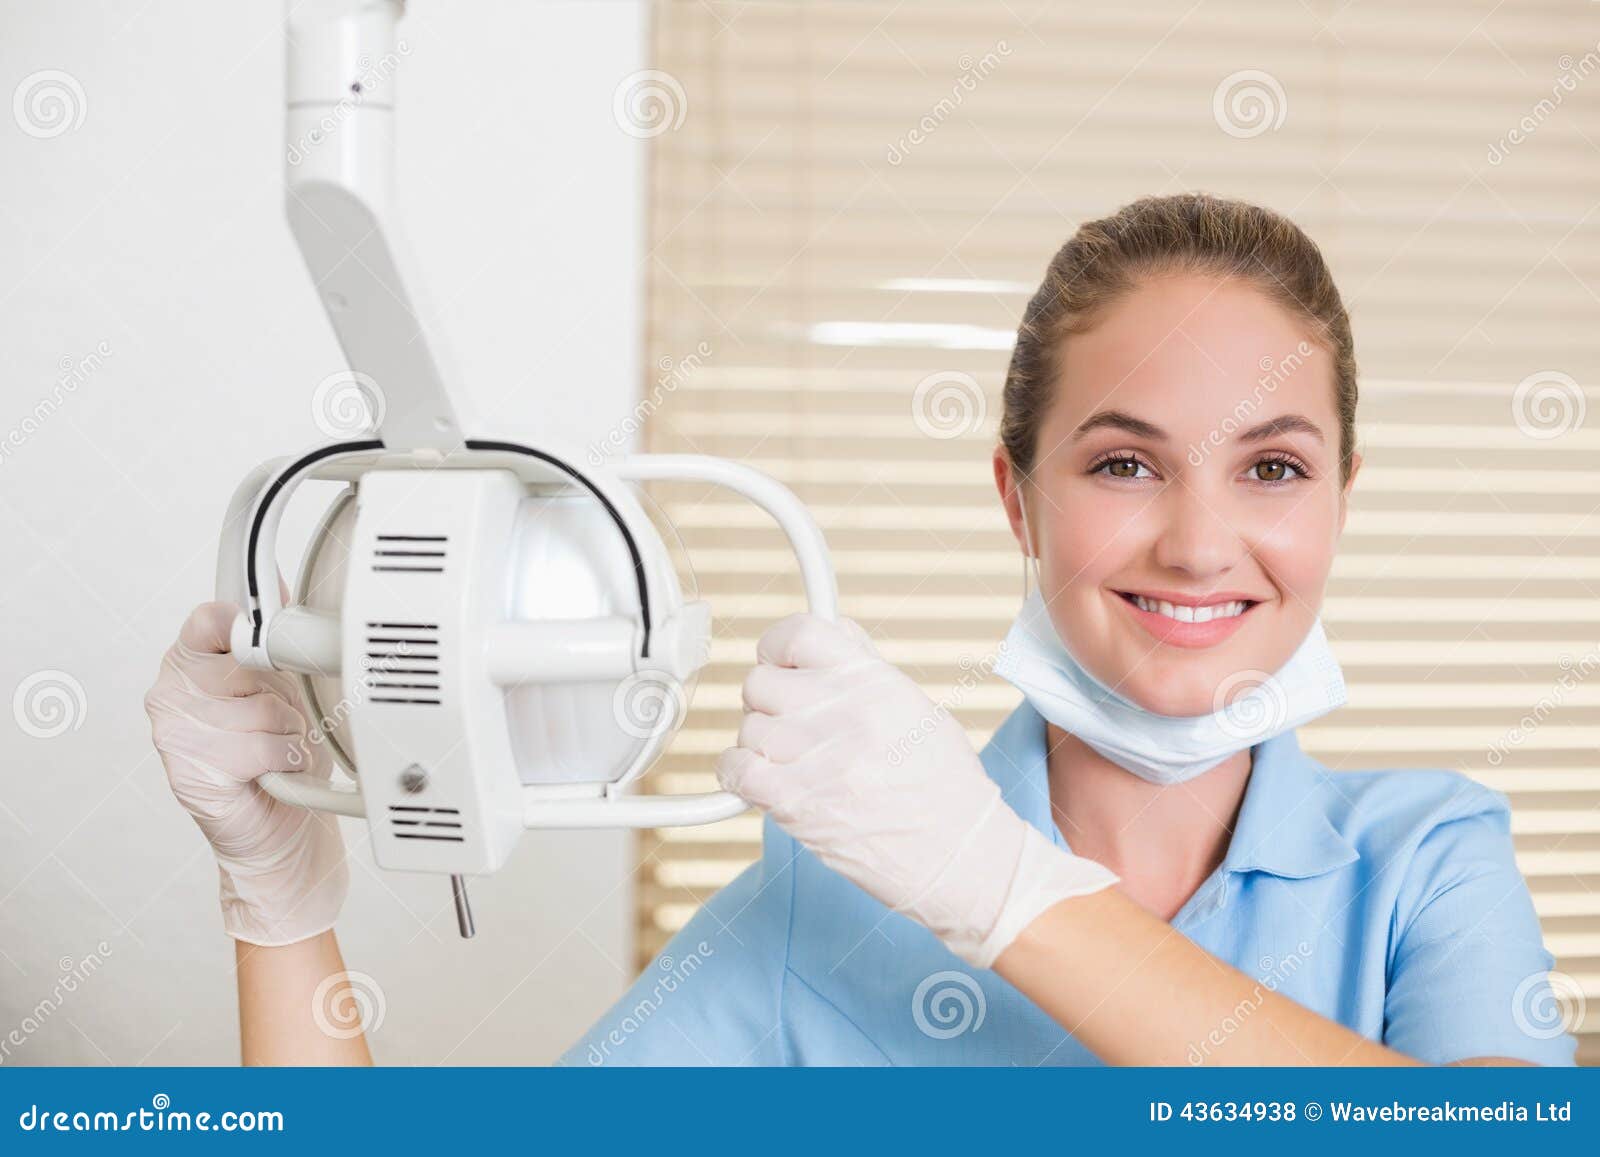 dental assistant smiling at camera beside light